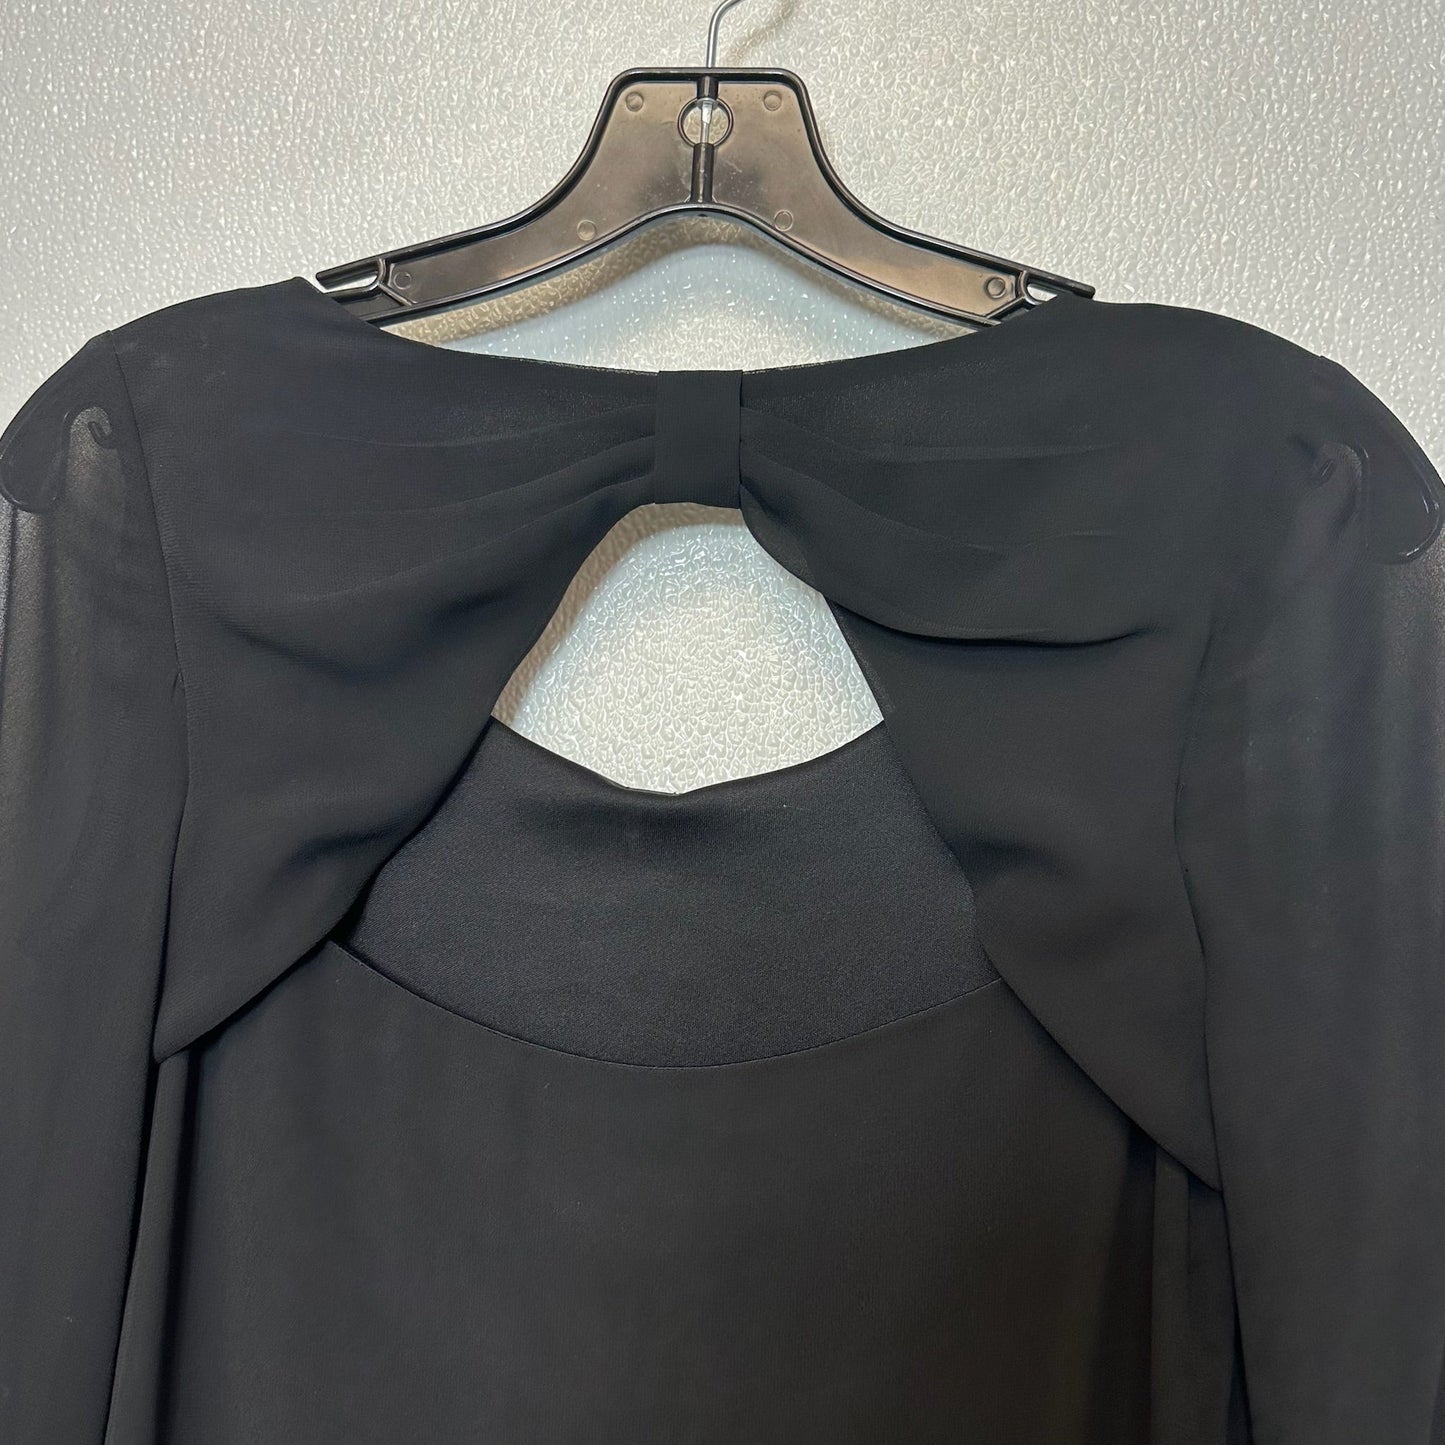 Black Dress Casual Short Bcx, Size S